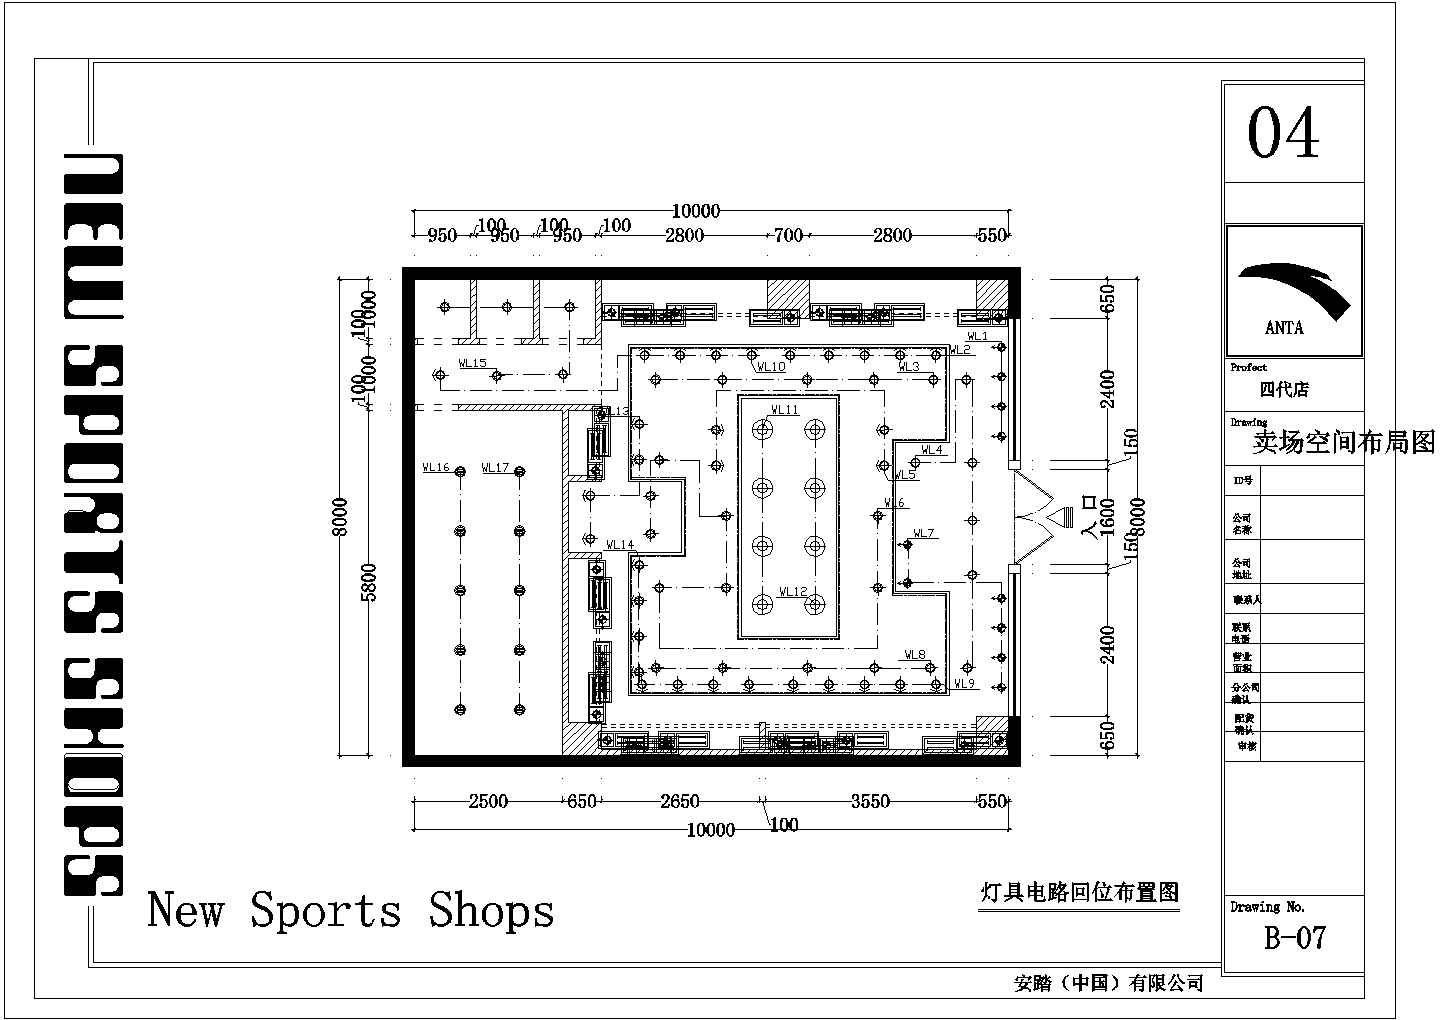 某运动体育品牌专卖店CAD室内设计装修施工图